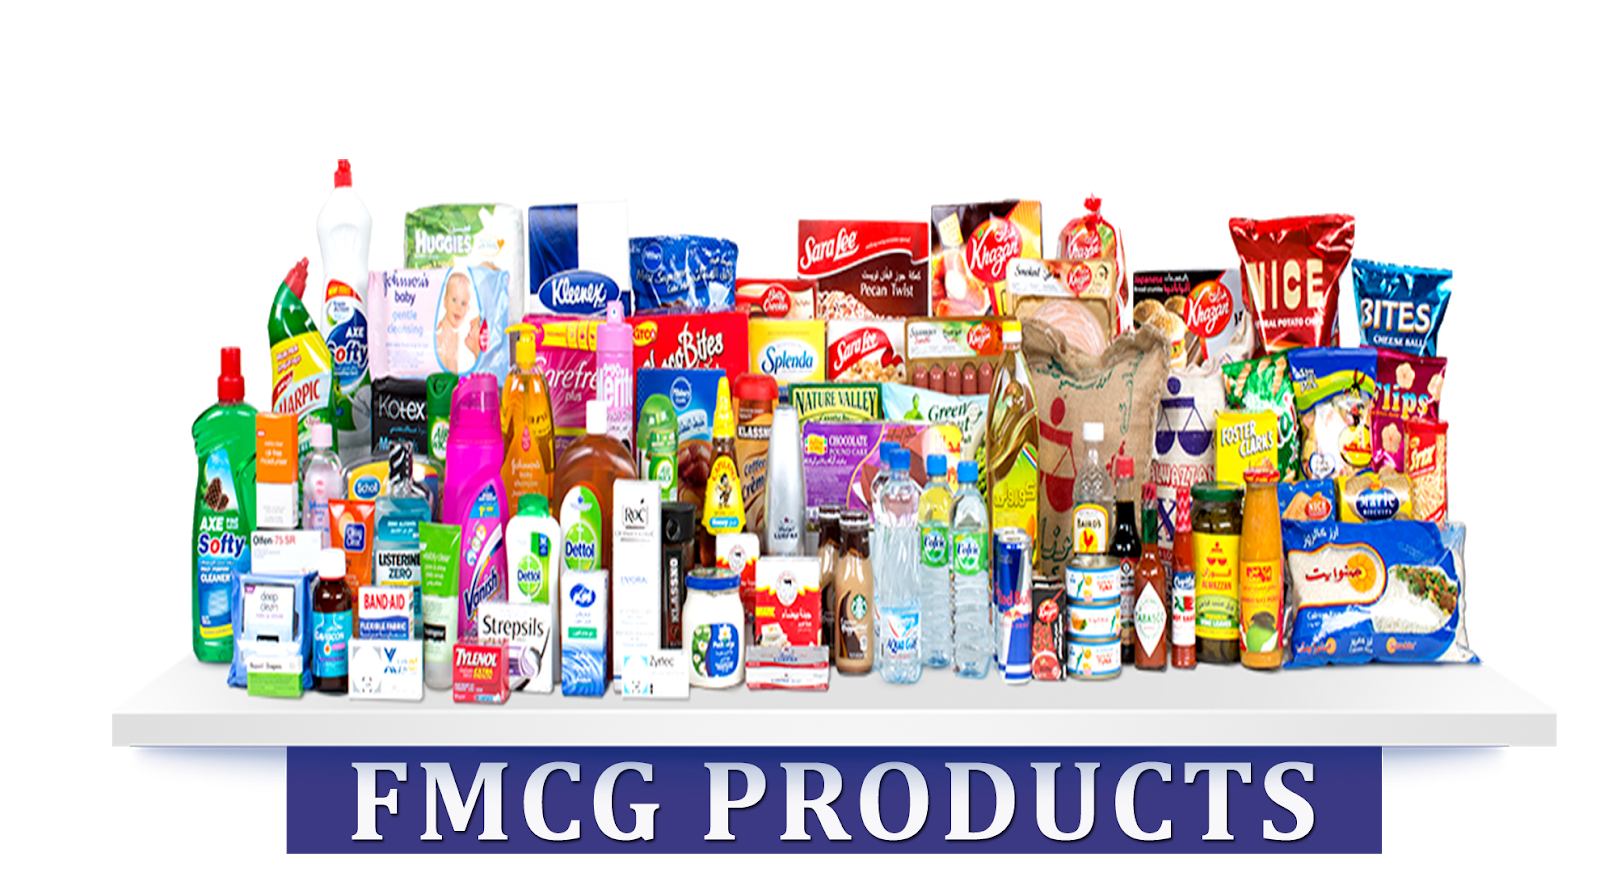 FMCG товары. Продукция FMCG. FMCG продукты. Баннер для магазина бытовой химии. General product